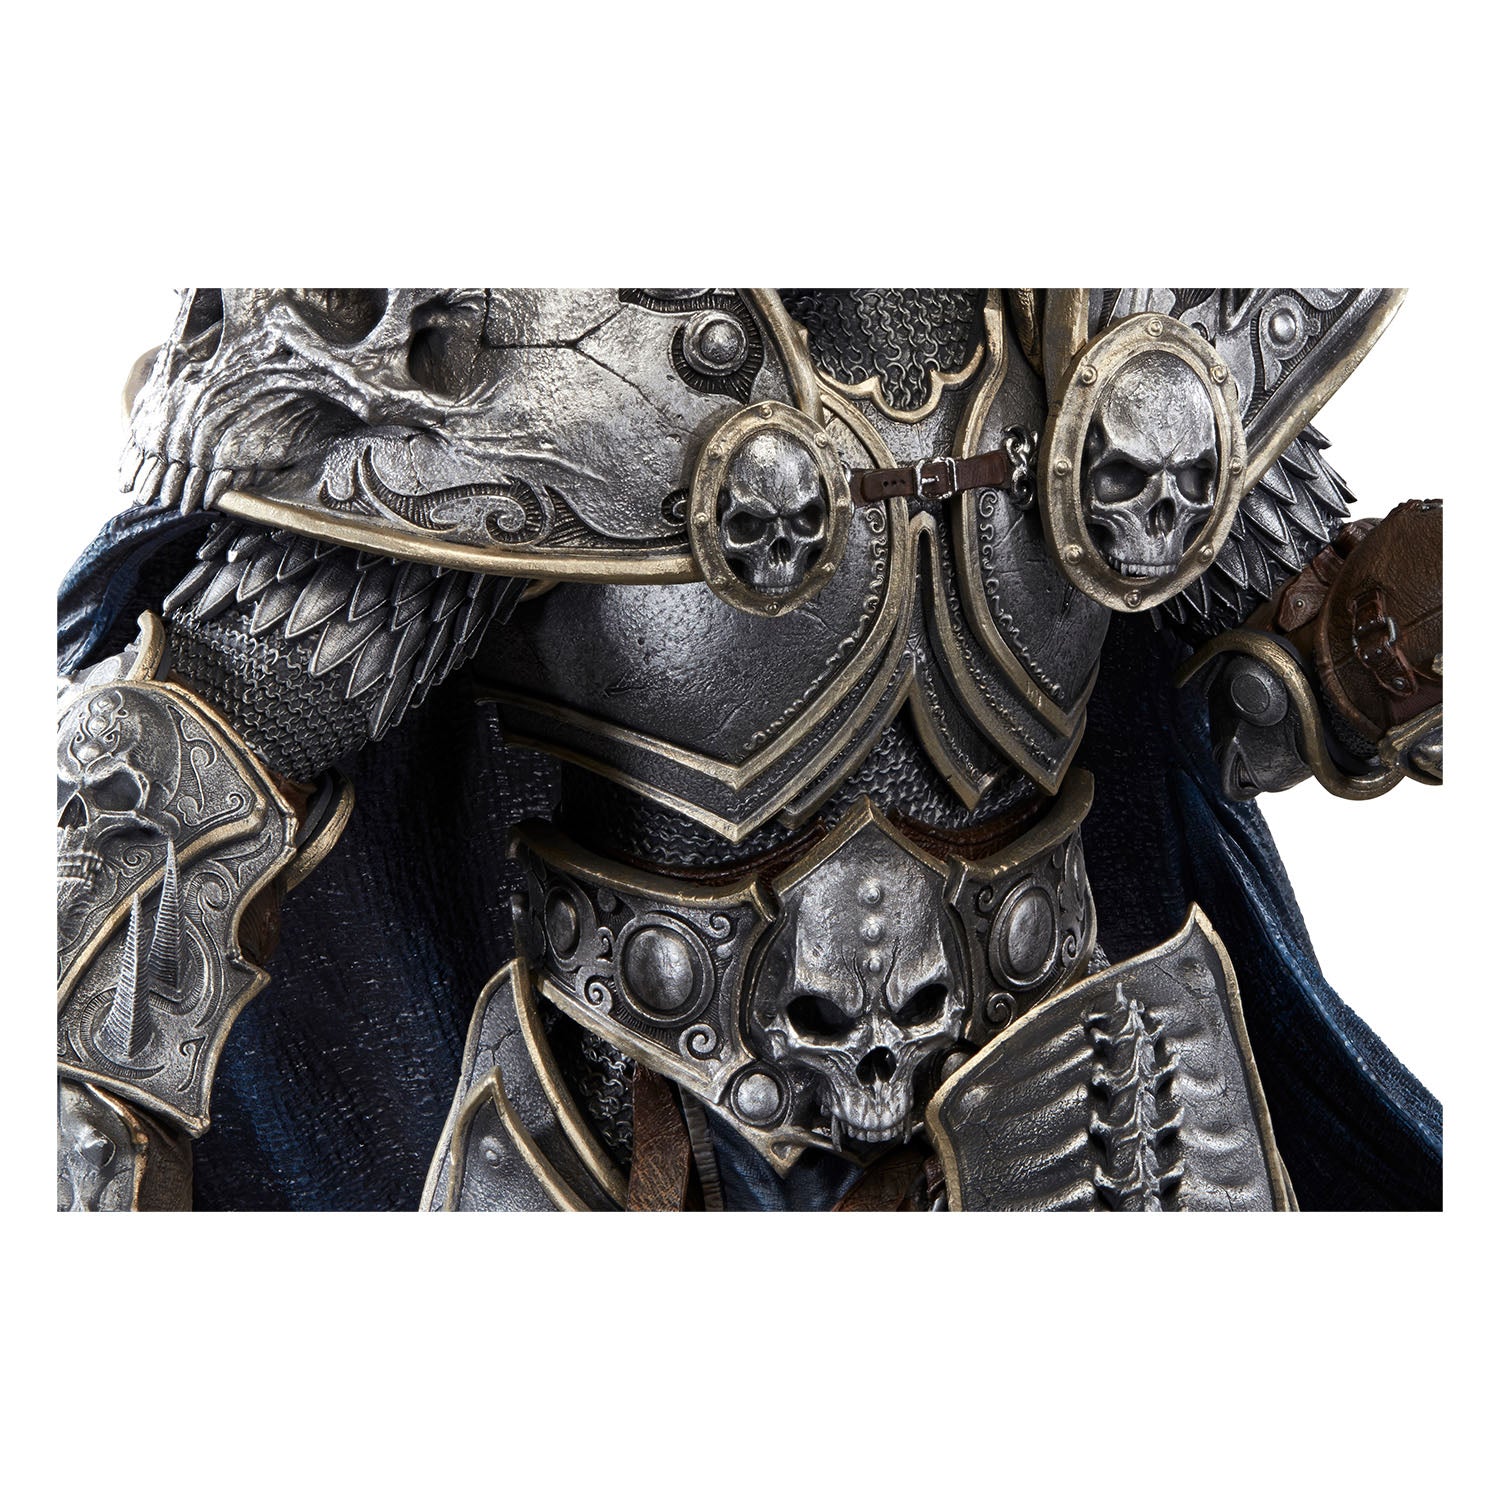 World of Warcraft Lich King Arthas Menethil 66cm Premium Statue - Zoom Chest View